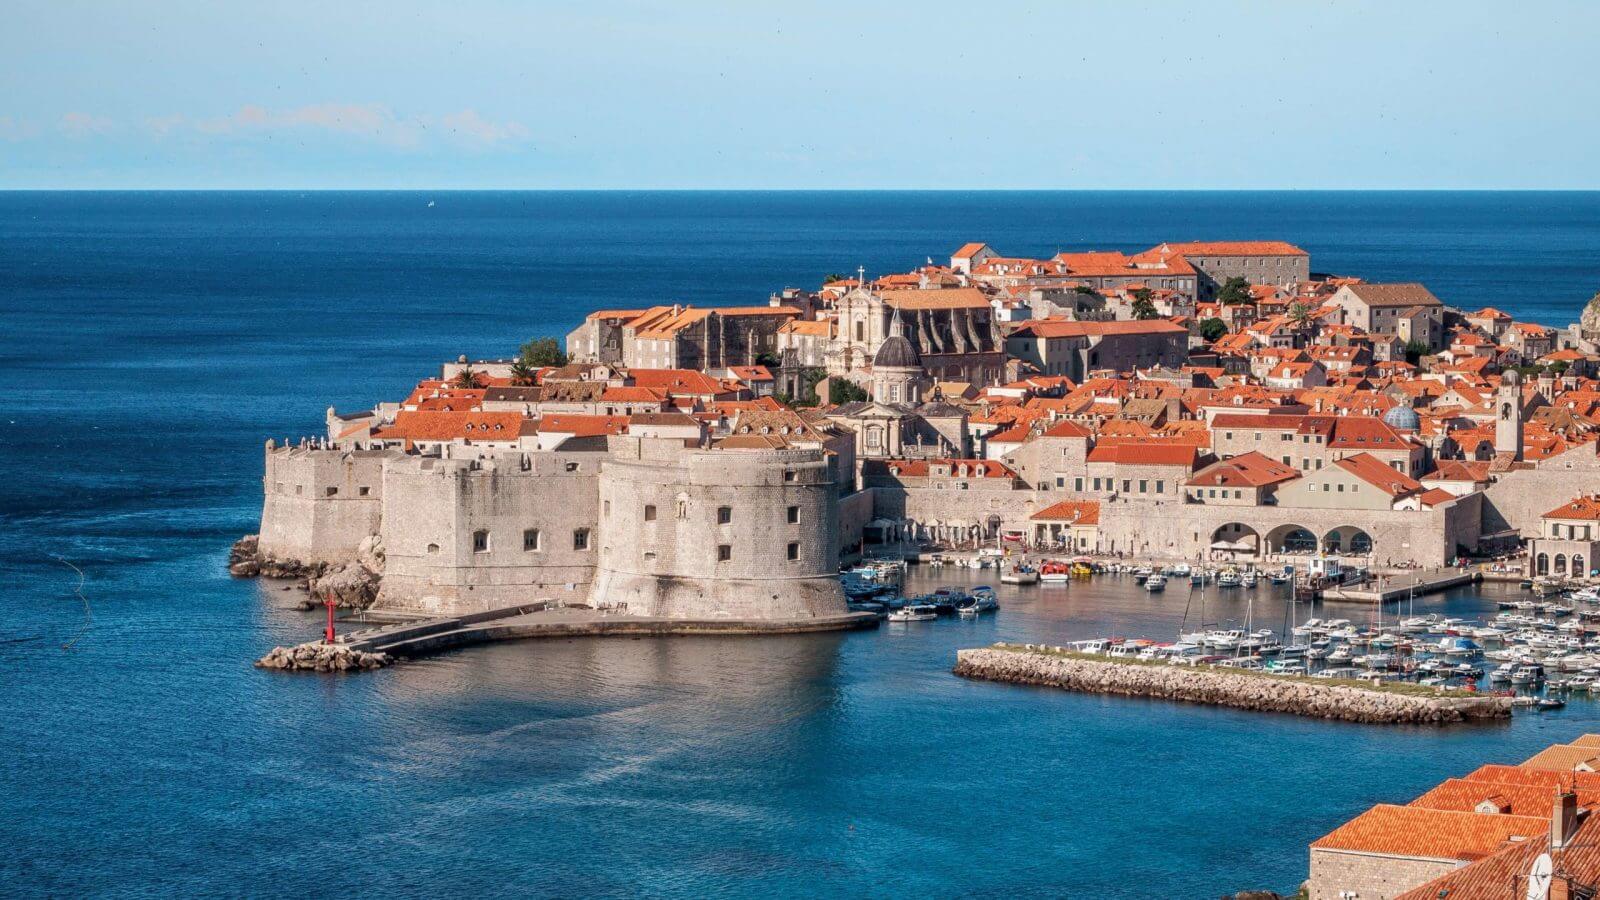 Altstadt von Dubrovnik, umgeben von einer majestätischen Festungsmauer